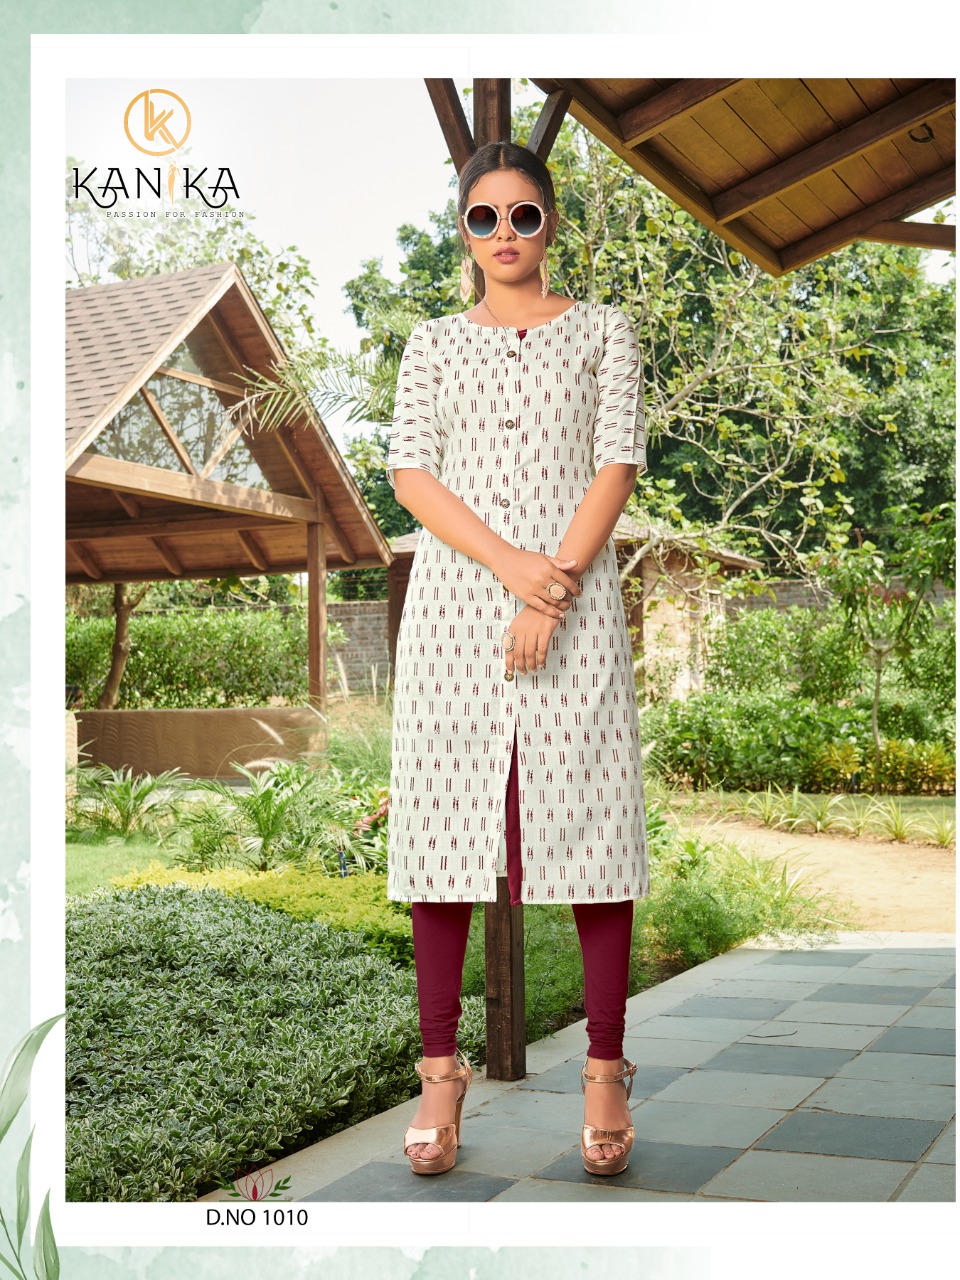 Kanika Slub Ikkat Vol 2 Catalog Designer Wear Fancy Kurtis Collection Wholesale Rate Surat